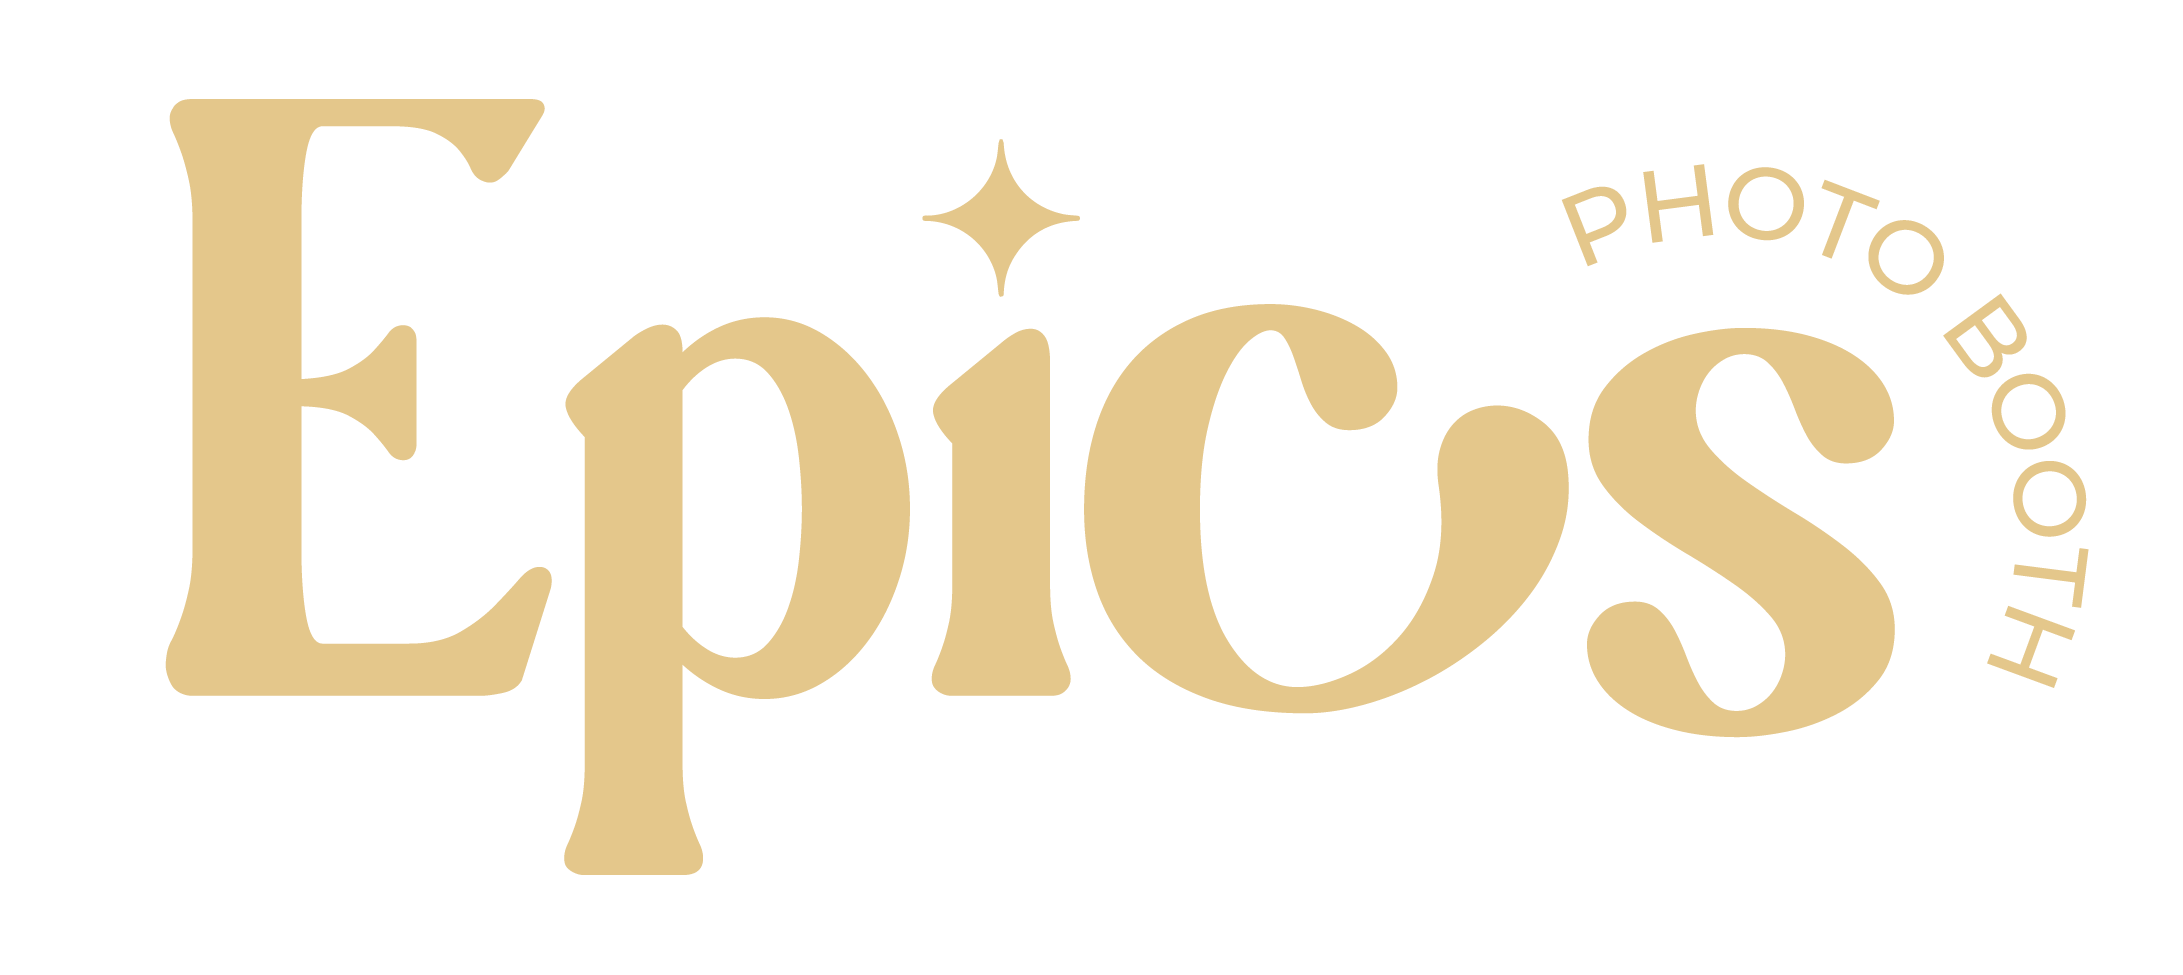 Epics Photo Booth